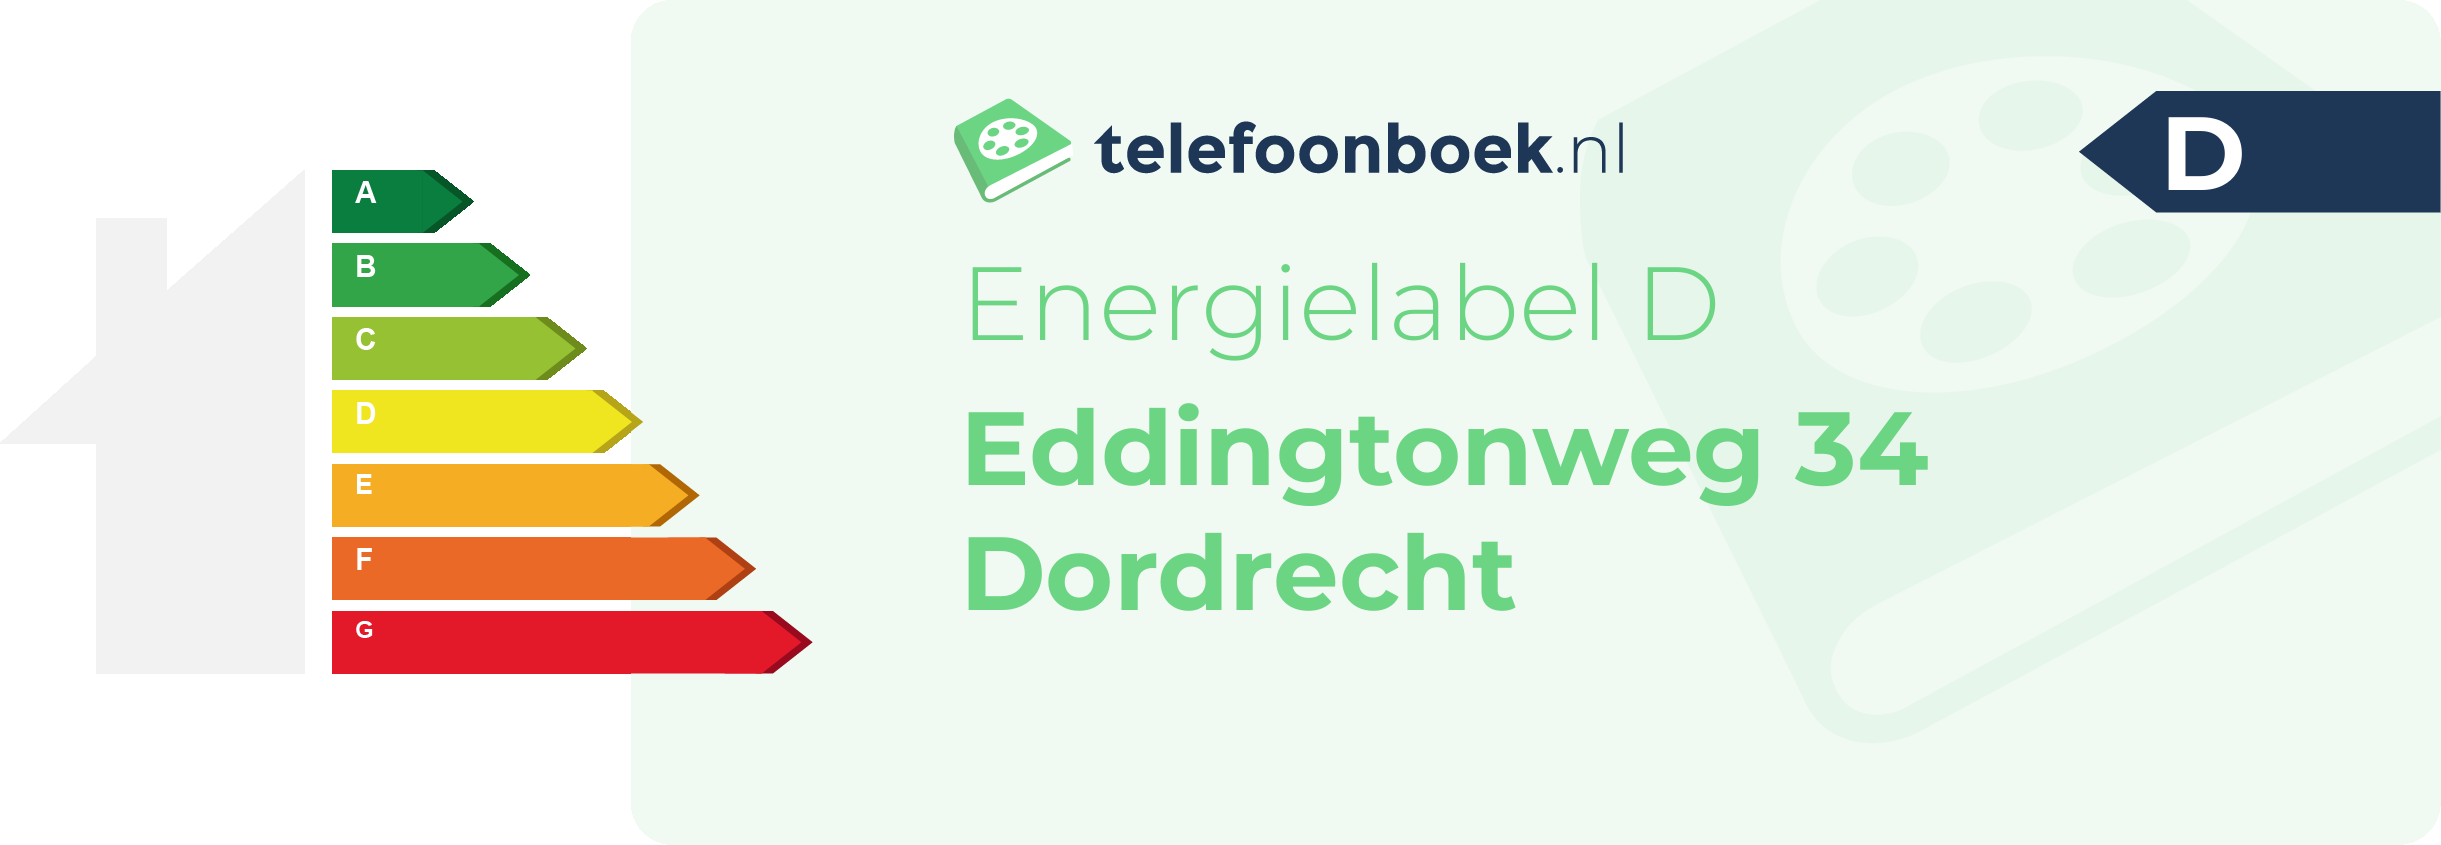 Energielabel Eddingtonweg 34 Dordrecht